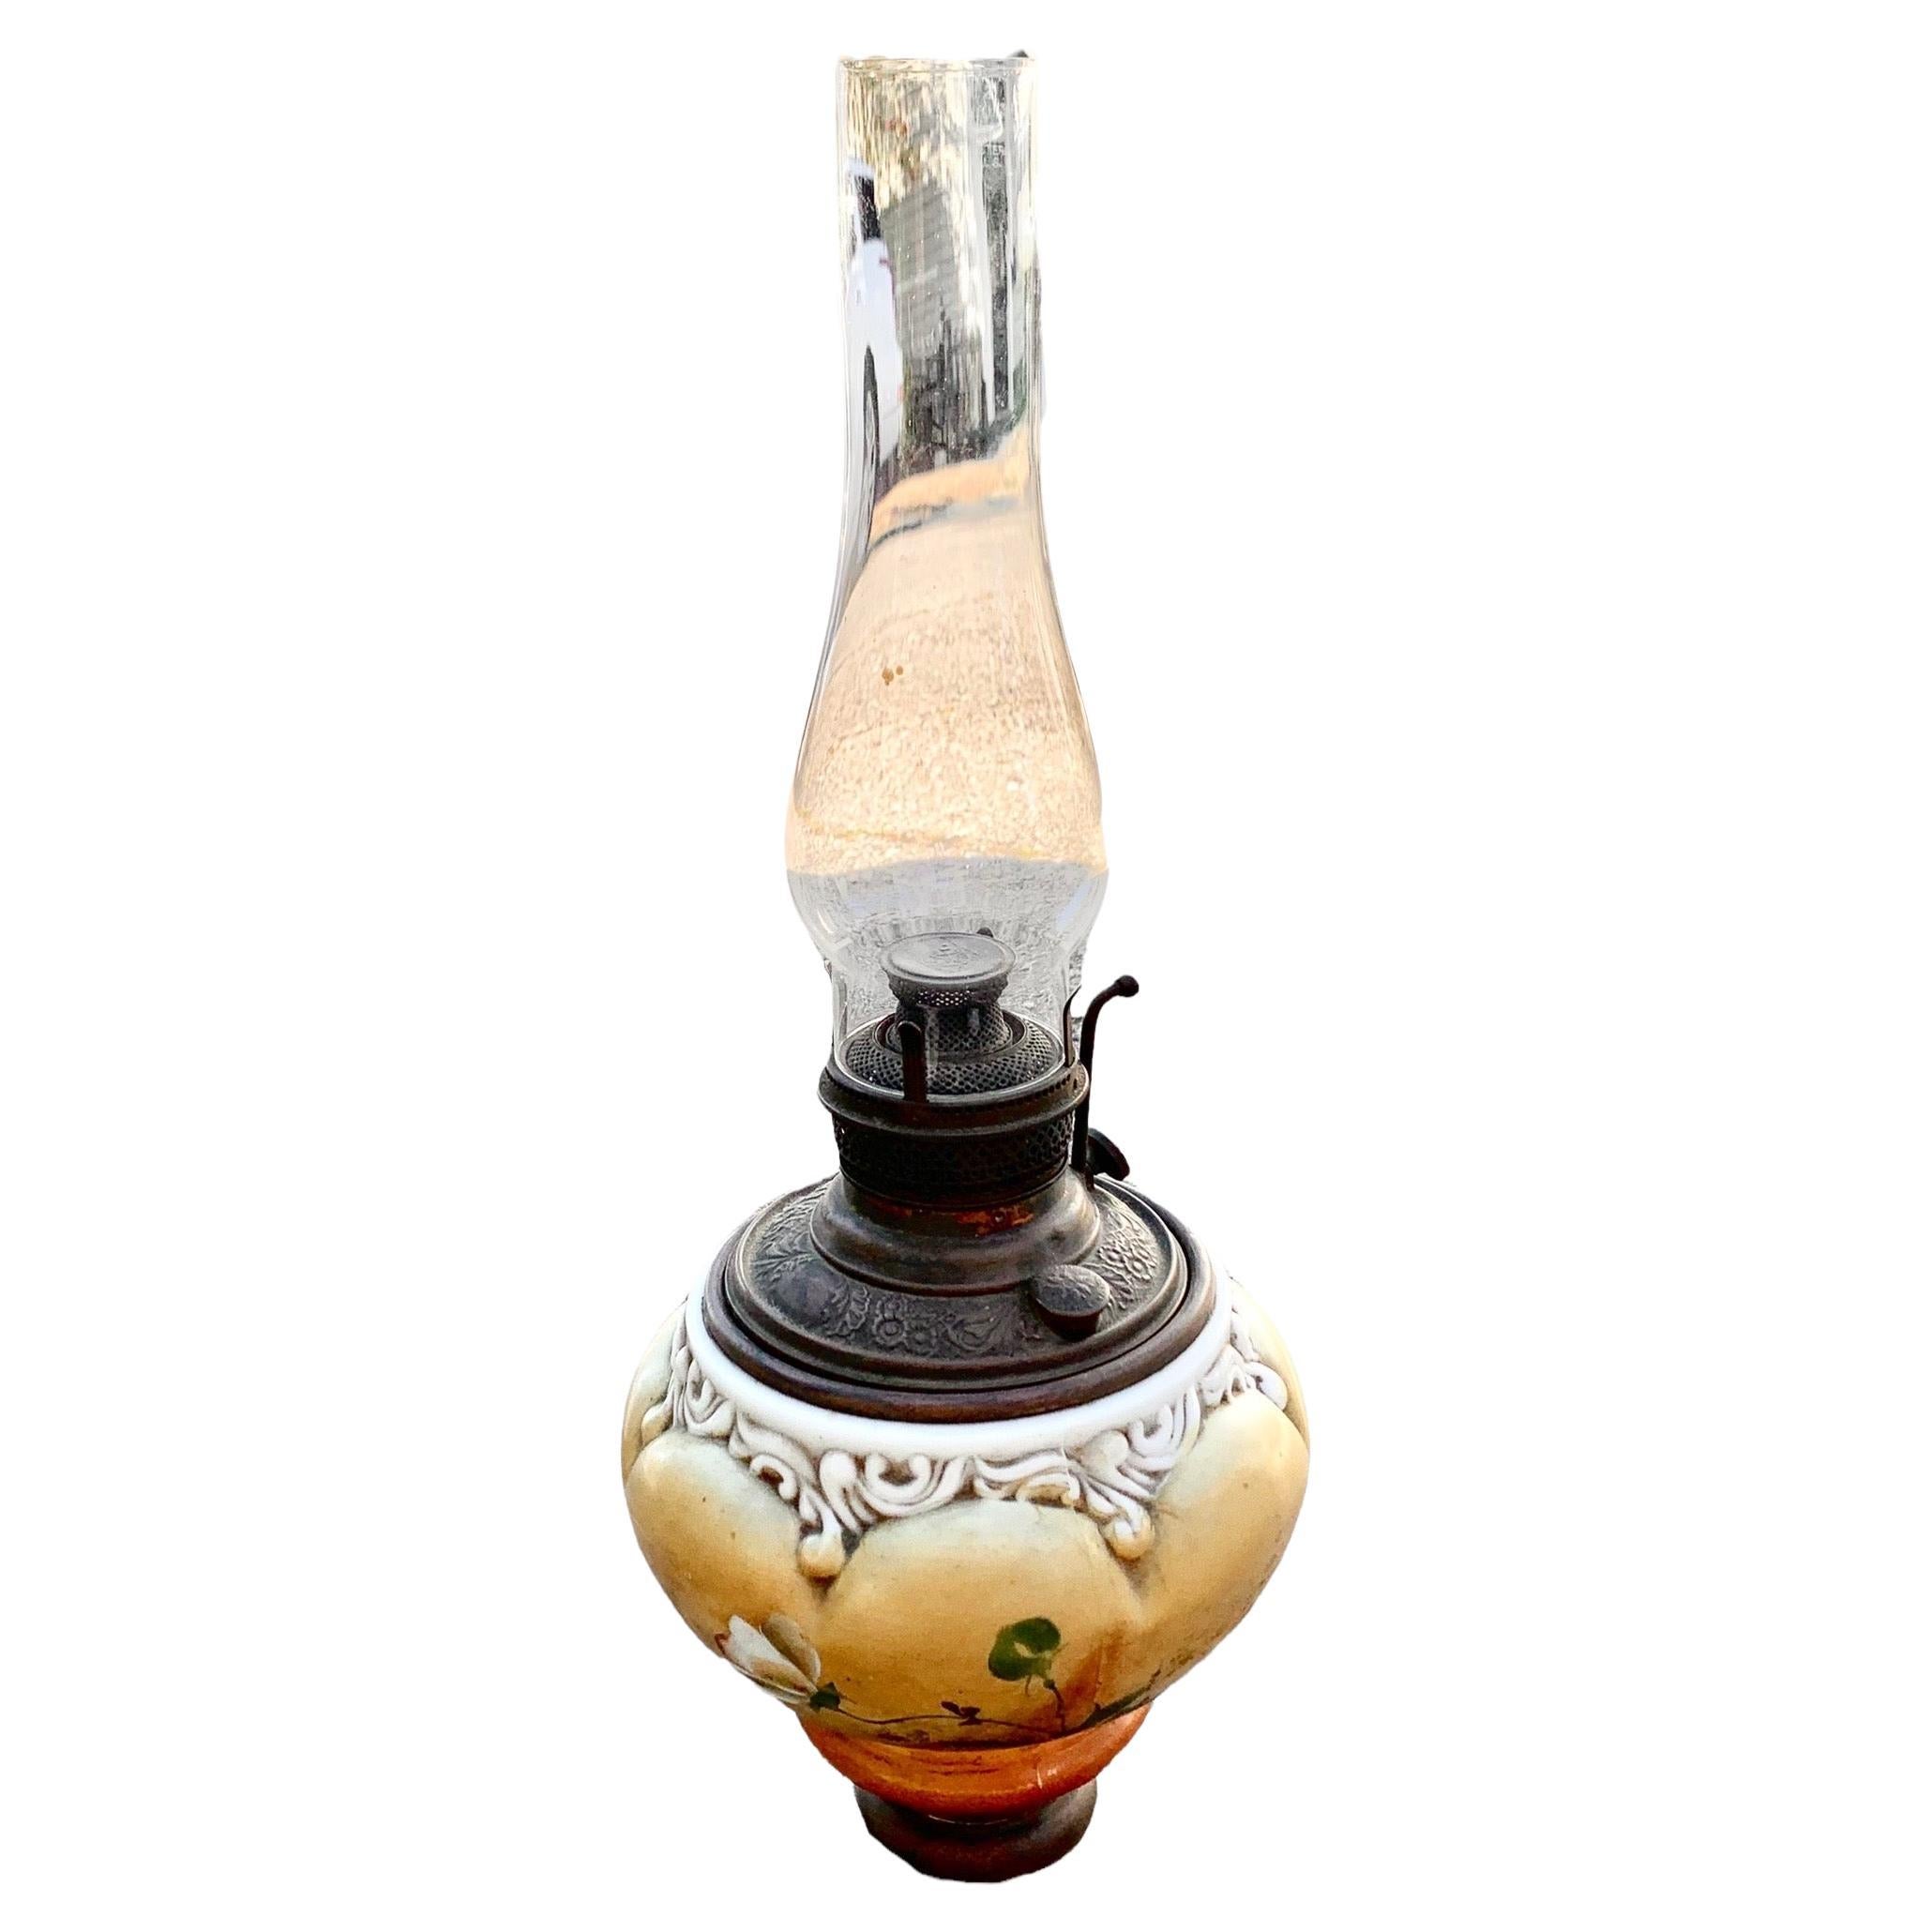 Eine amerikanische viktorianische Öllampe mit einer herausragenden handgemalten floralen Schrift, einem filigranen Sockel aus Messingguss, einem mundgeblasenen Schornstein und dem originalen Brenner und Teilen. Es handelt sich um viktorianische